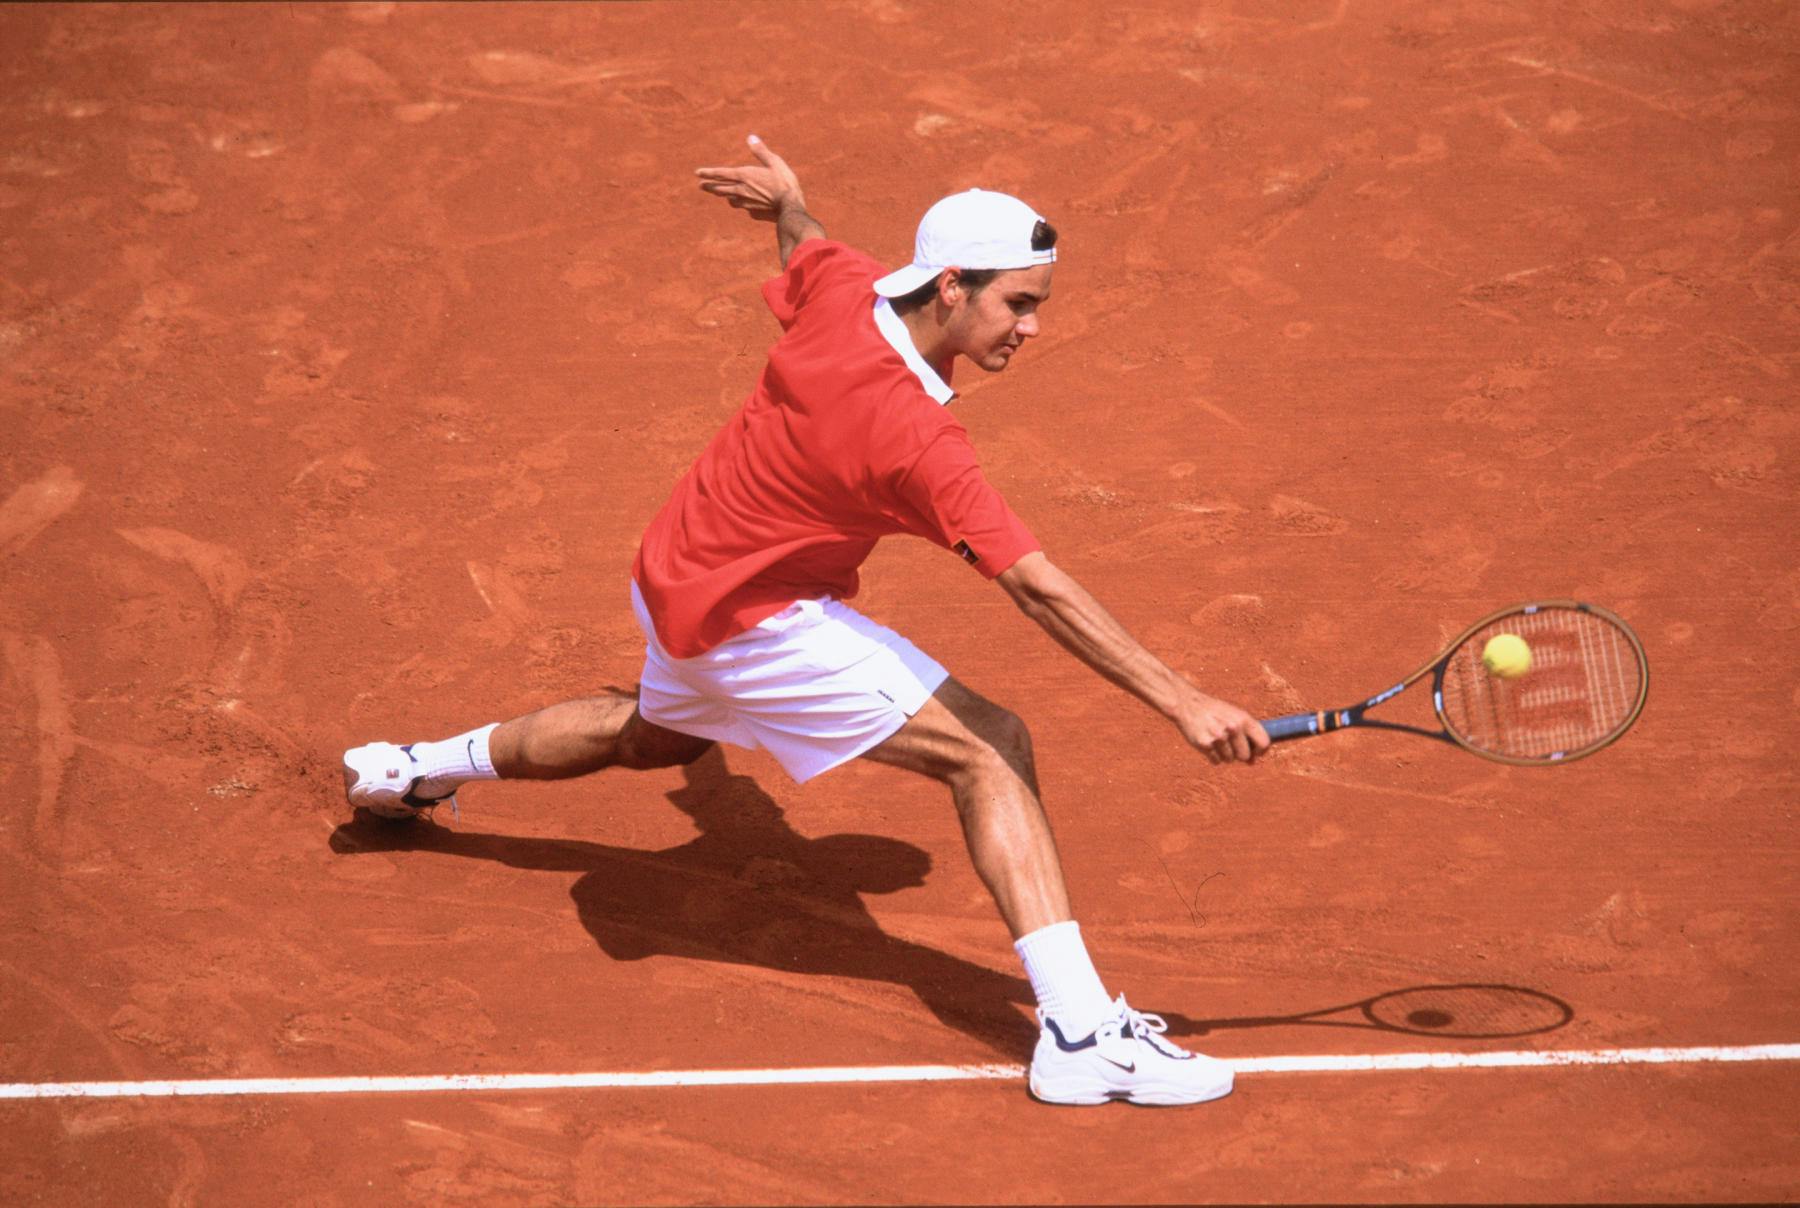 Roger Federer’s career in images RolandGarros The official site